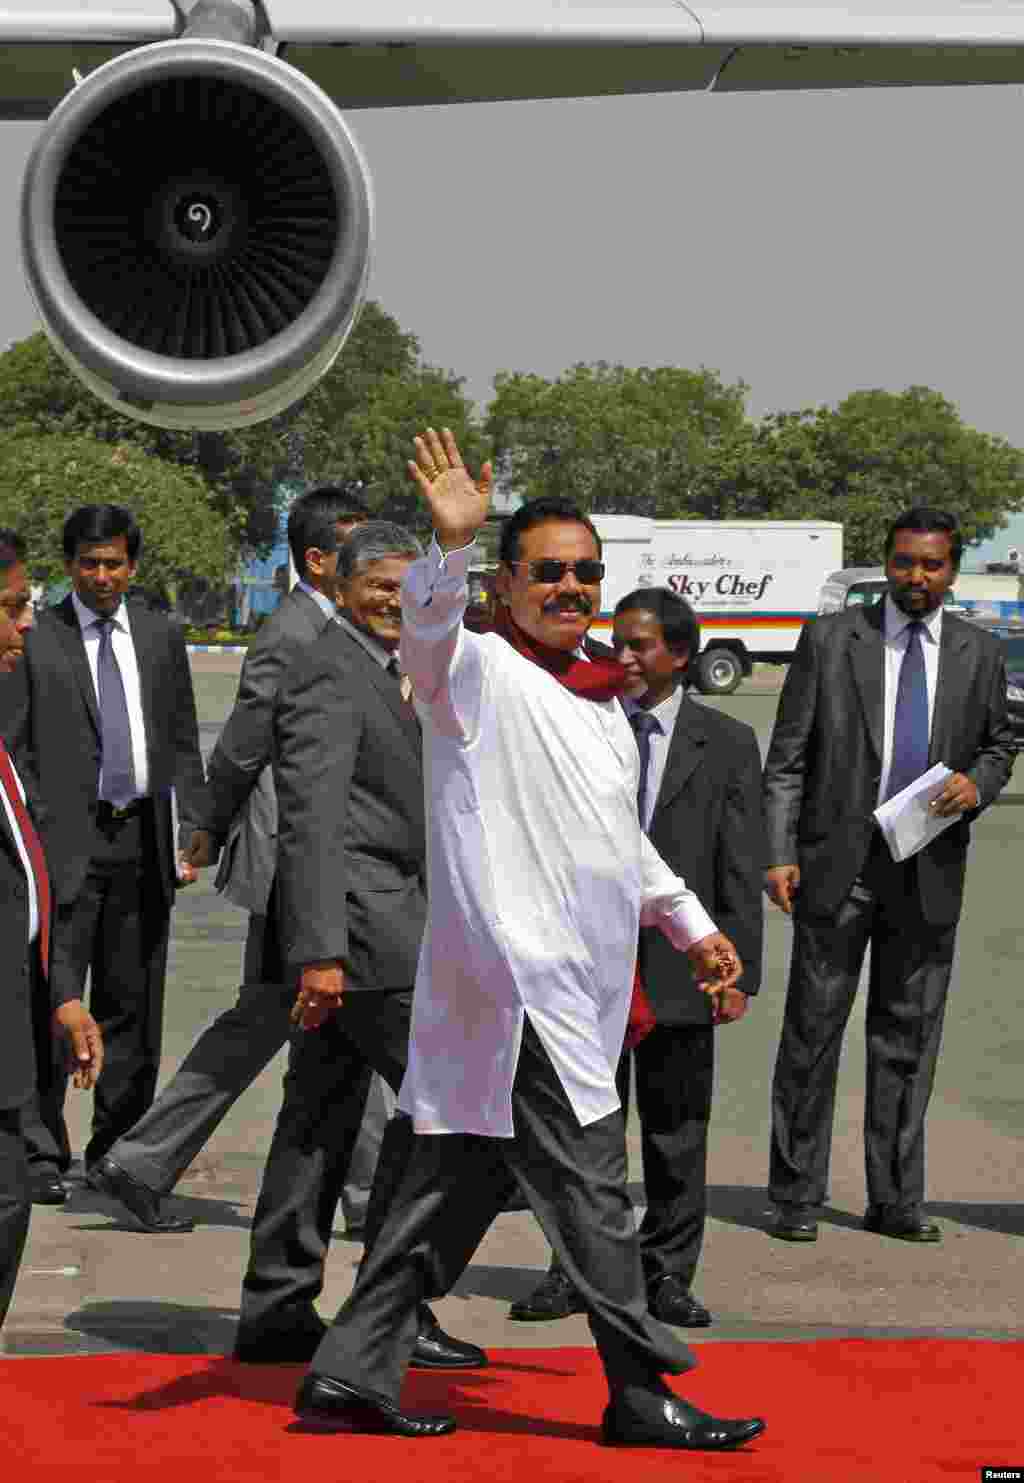 سری لنکا کے صدر راج پکشے بھی تقریب حلف برداری میں شرکت کے لیے بھارت پہنچے۔